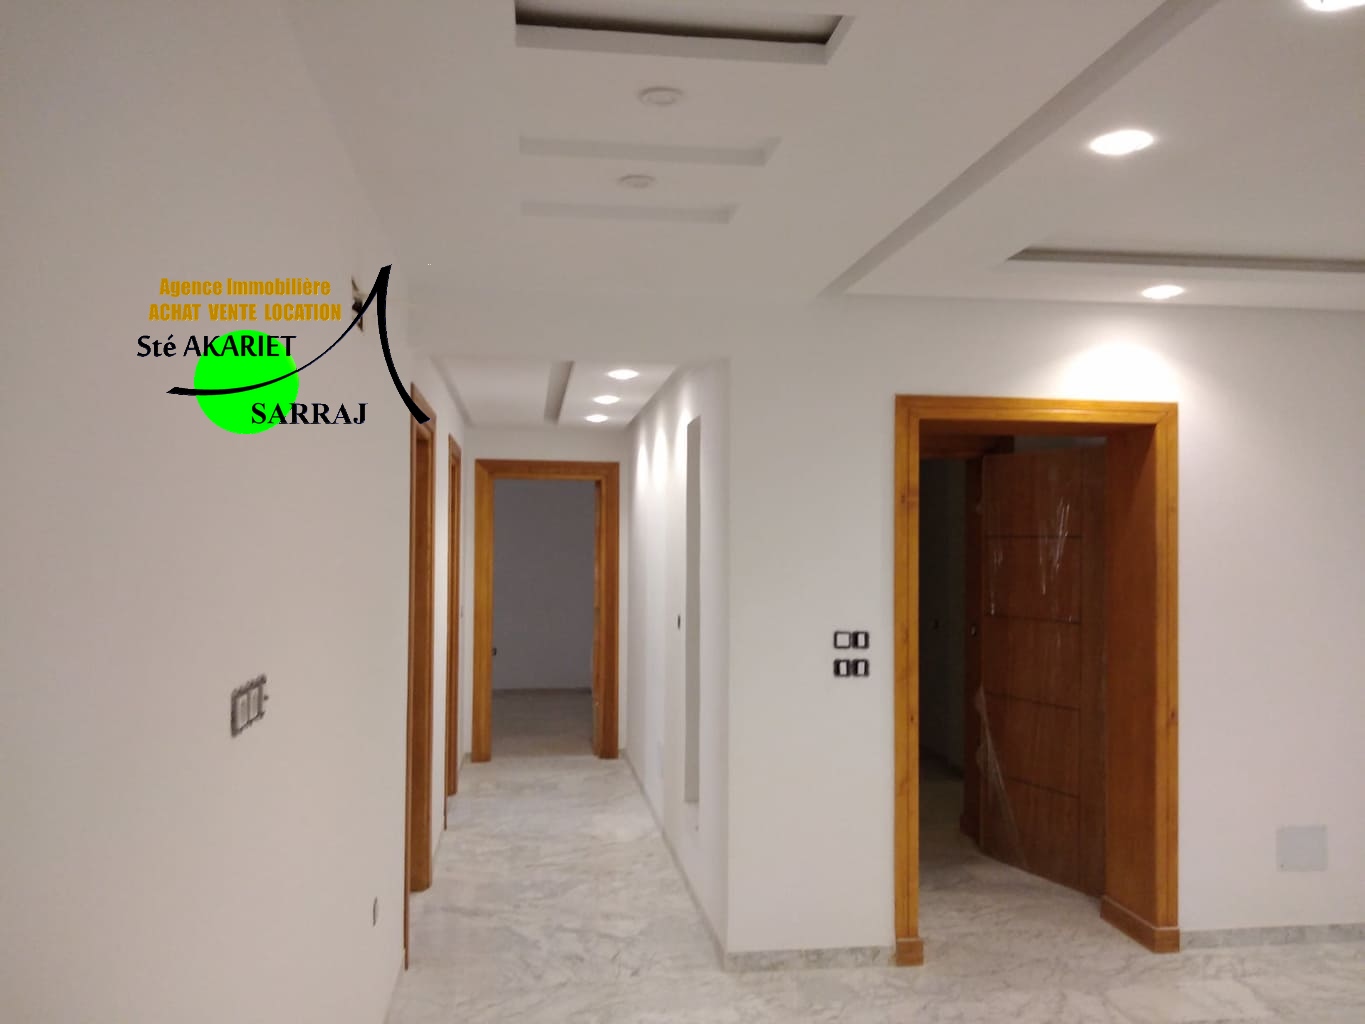 Sousse Jaouhara Sousse Khezama Vente Maisons Offre d'investissement immeuble neuf  khzema est